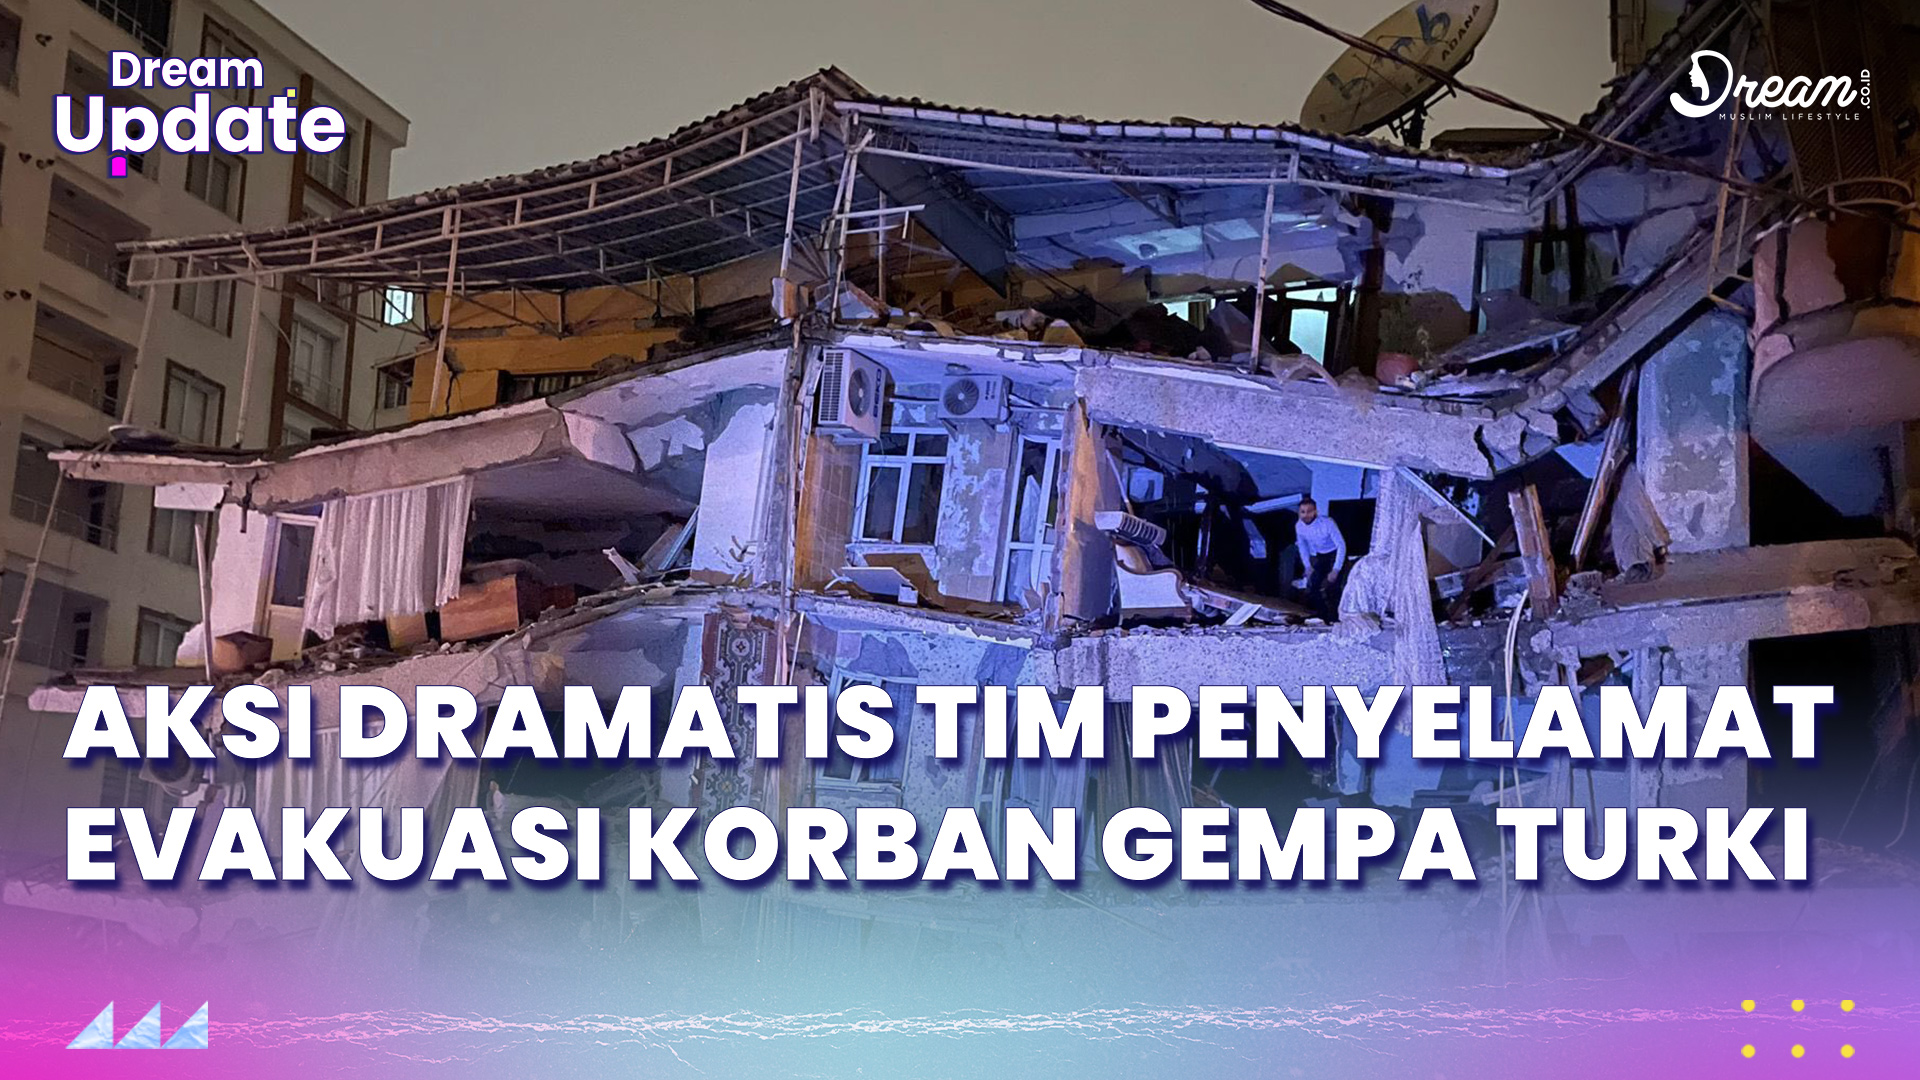 Aksi Dramatis Tim Penyelamat Evakuasi Korban Gempa Turki